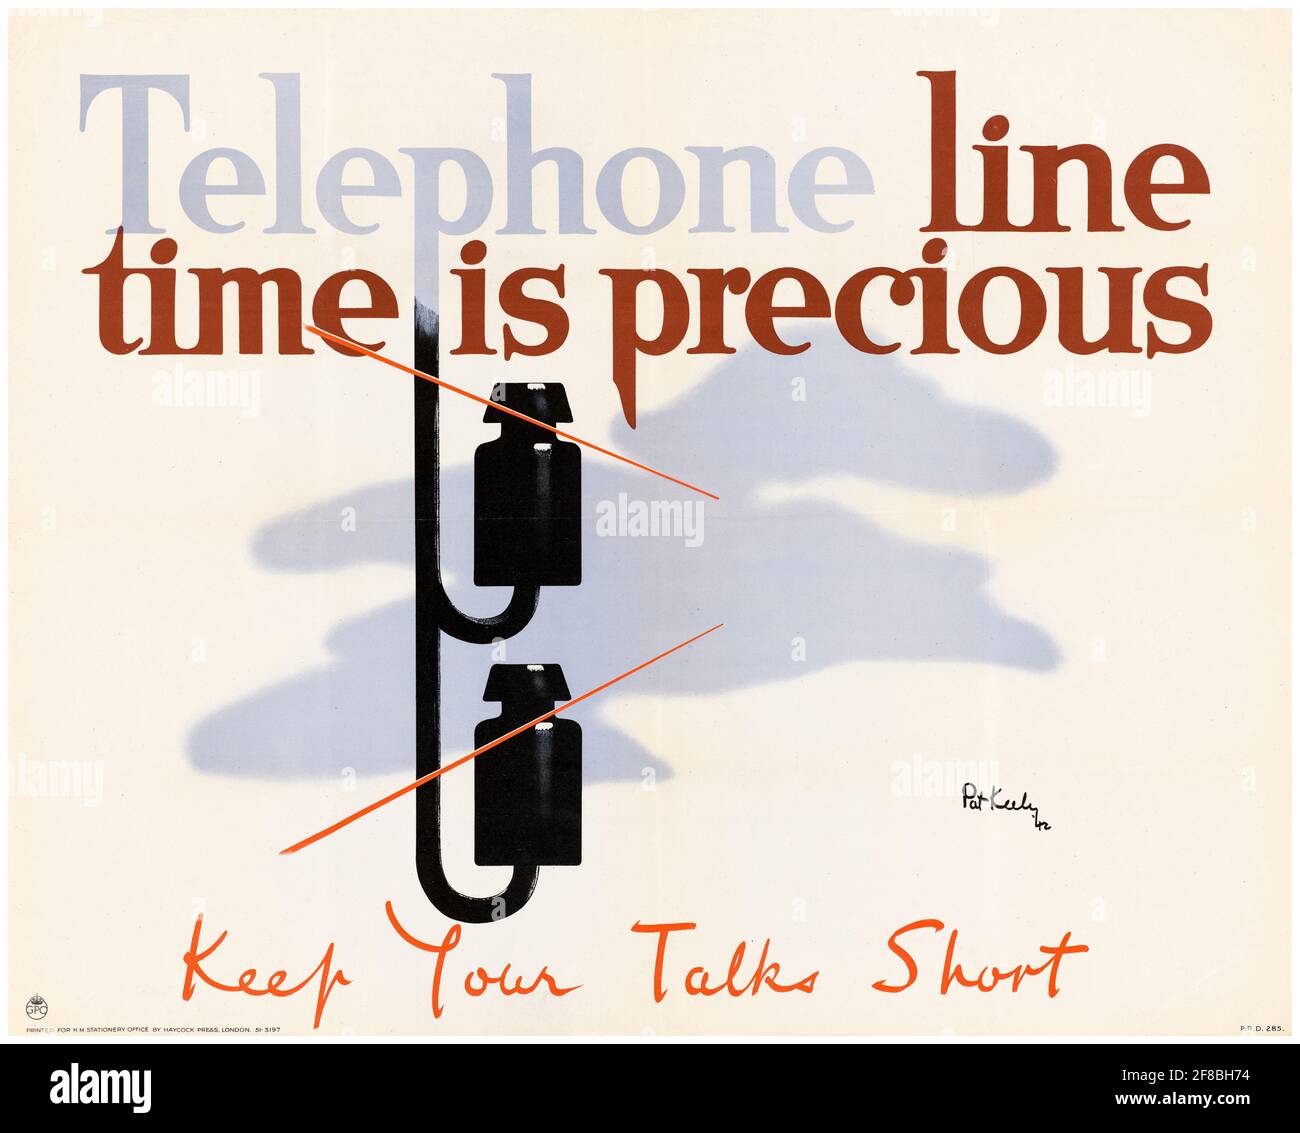 Inglese, WW2 Saving resources poster, telefono linea tempo è prezioso, mantenere le vostre conversazioni breve, 1942-1945 Foto Stock